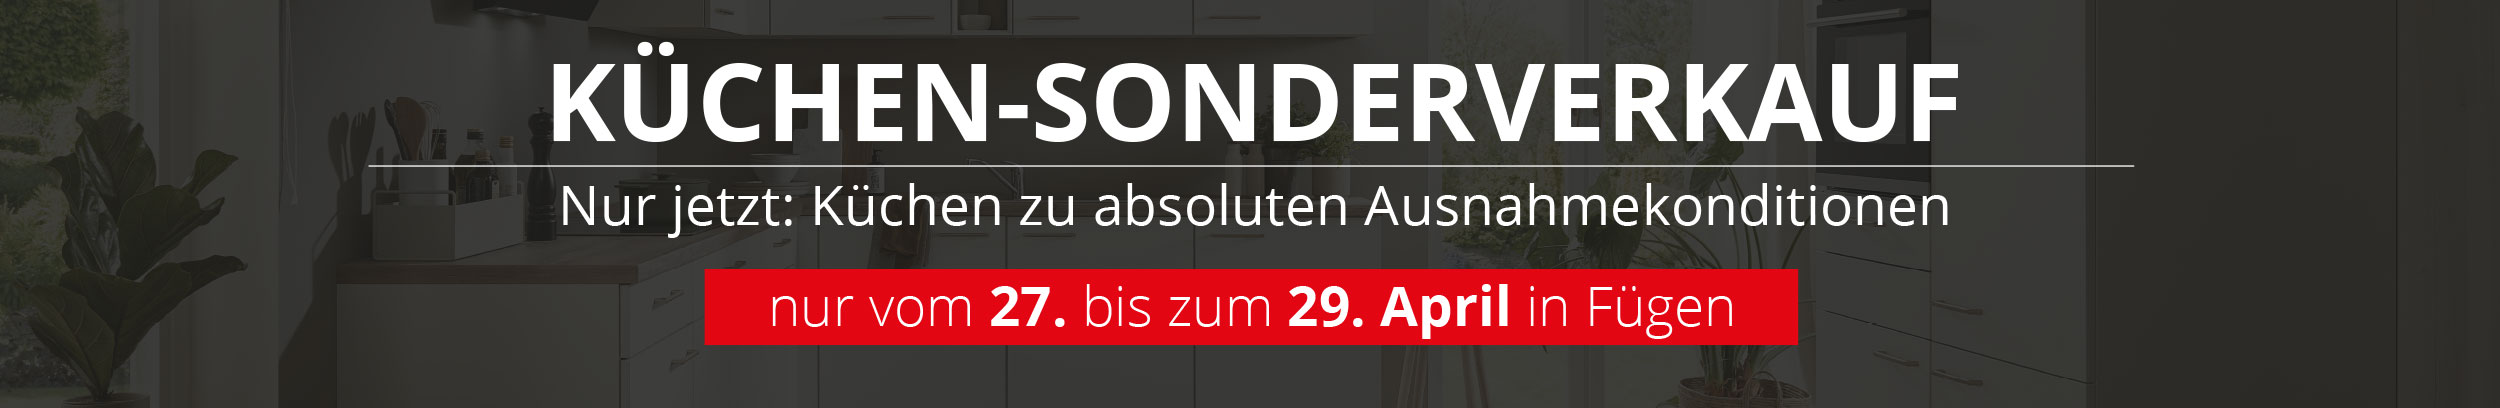 Großer Küchen-Sonderverkauf bei WetscherMax in Fügen. Nur vom 27. - 29. April erhalten Sie Küchen zu absoluten Ausnahmekonditionen!